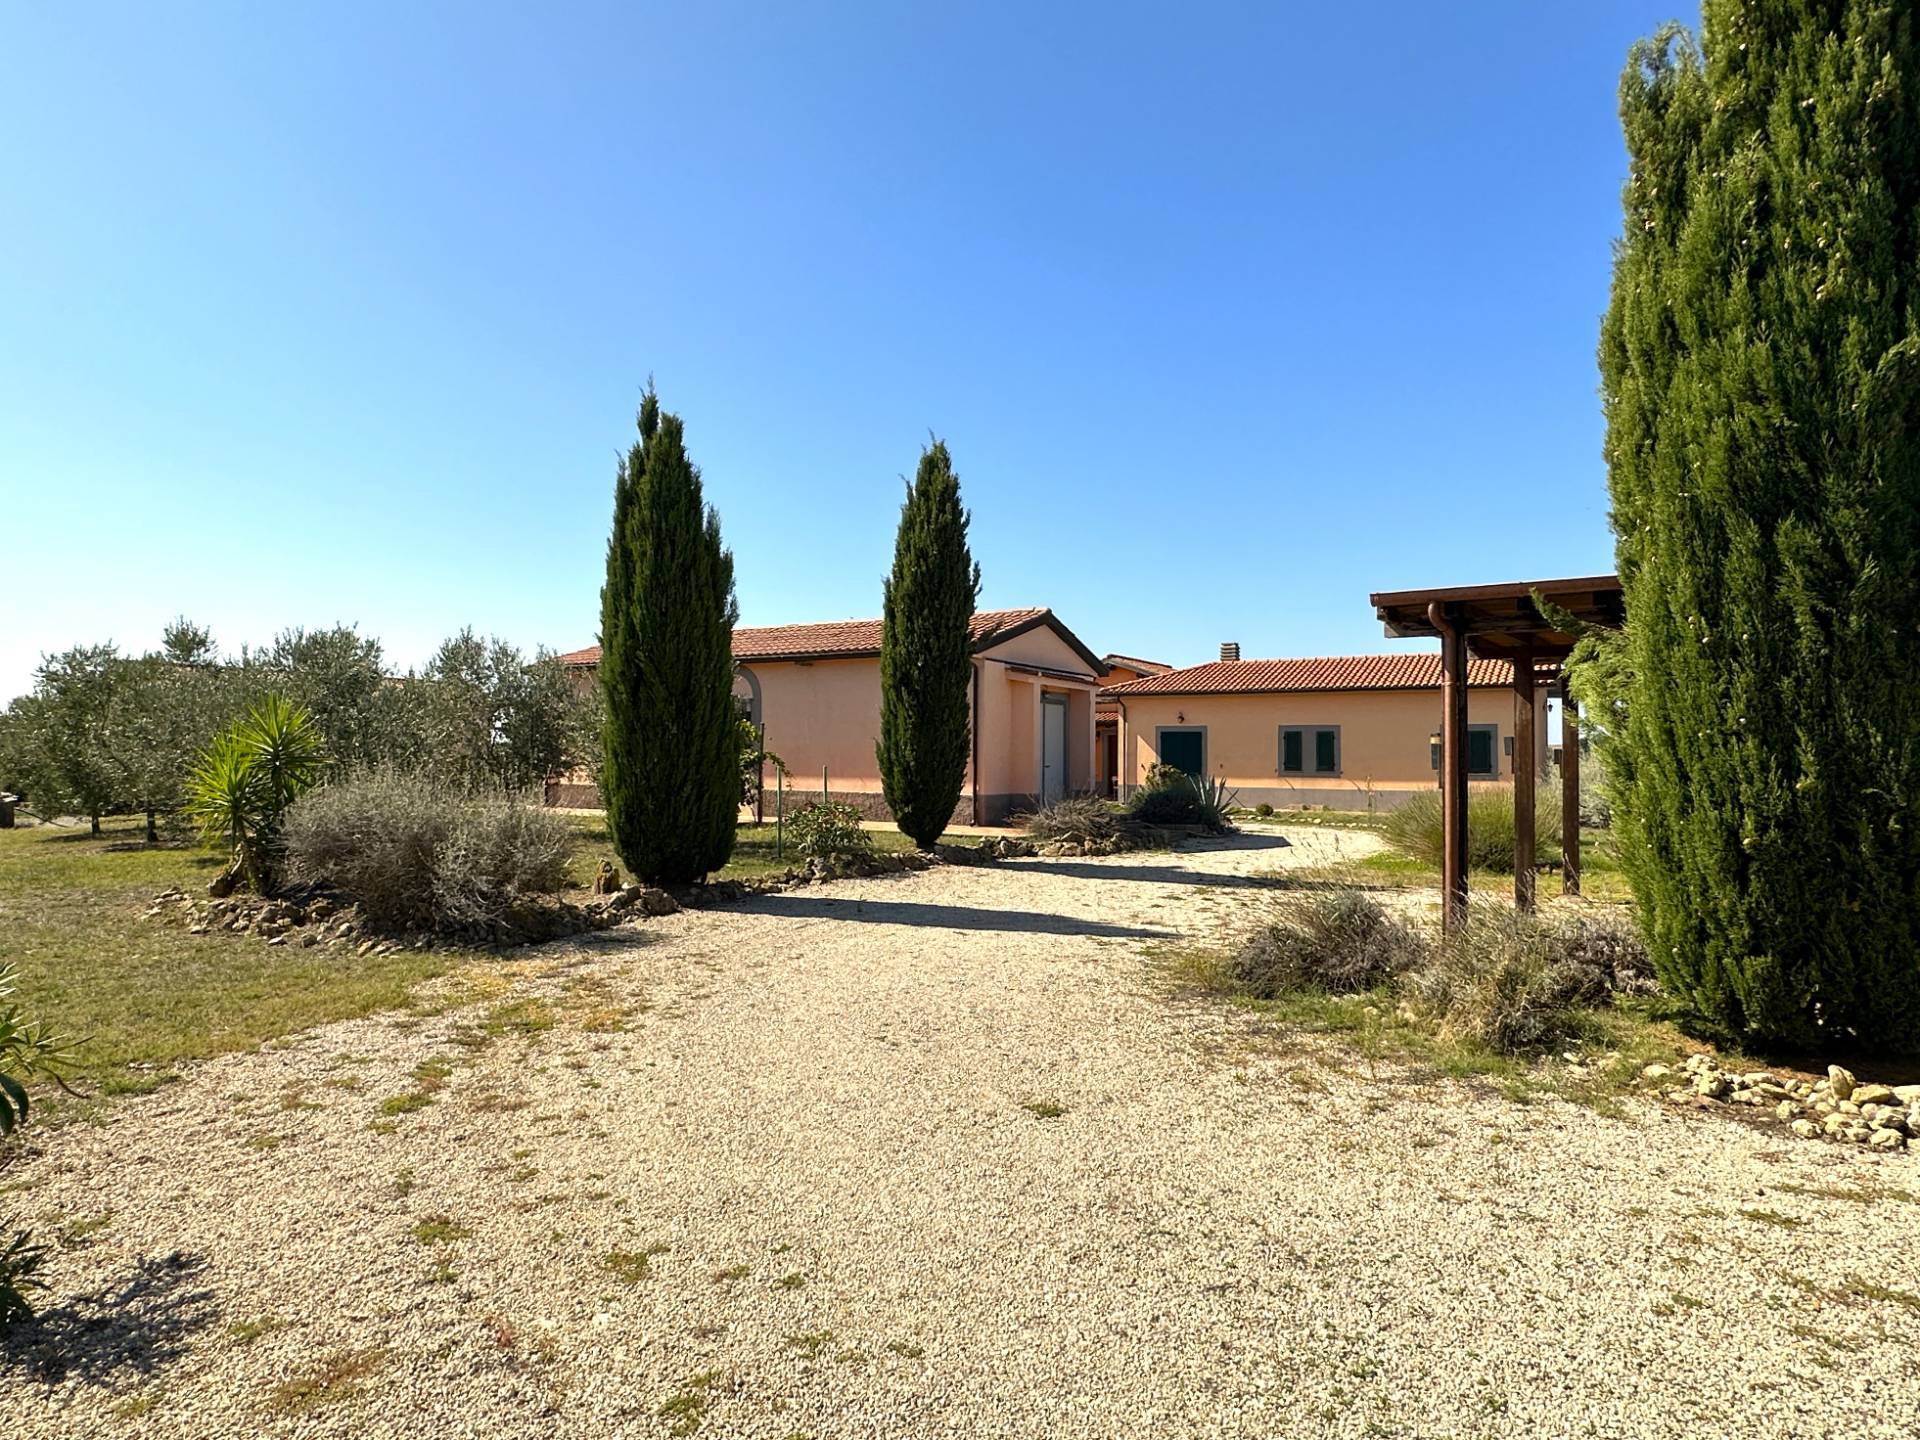 Villa in vendita a Tarquinia, 5 locali, zona Località: Campagna, prezzo € 550.000 | PortaleAgenzieImmobiliari.it